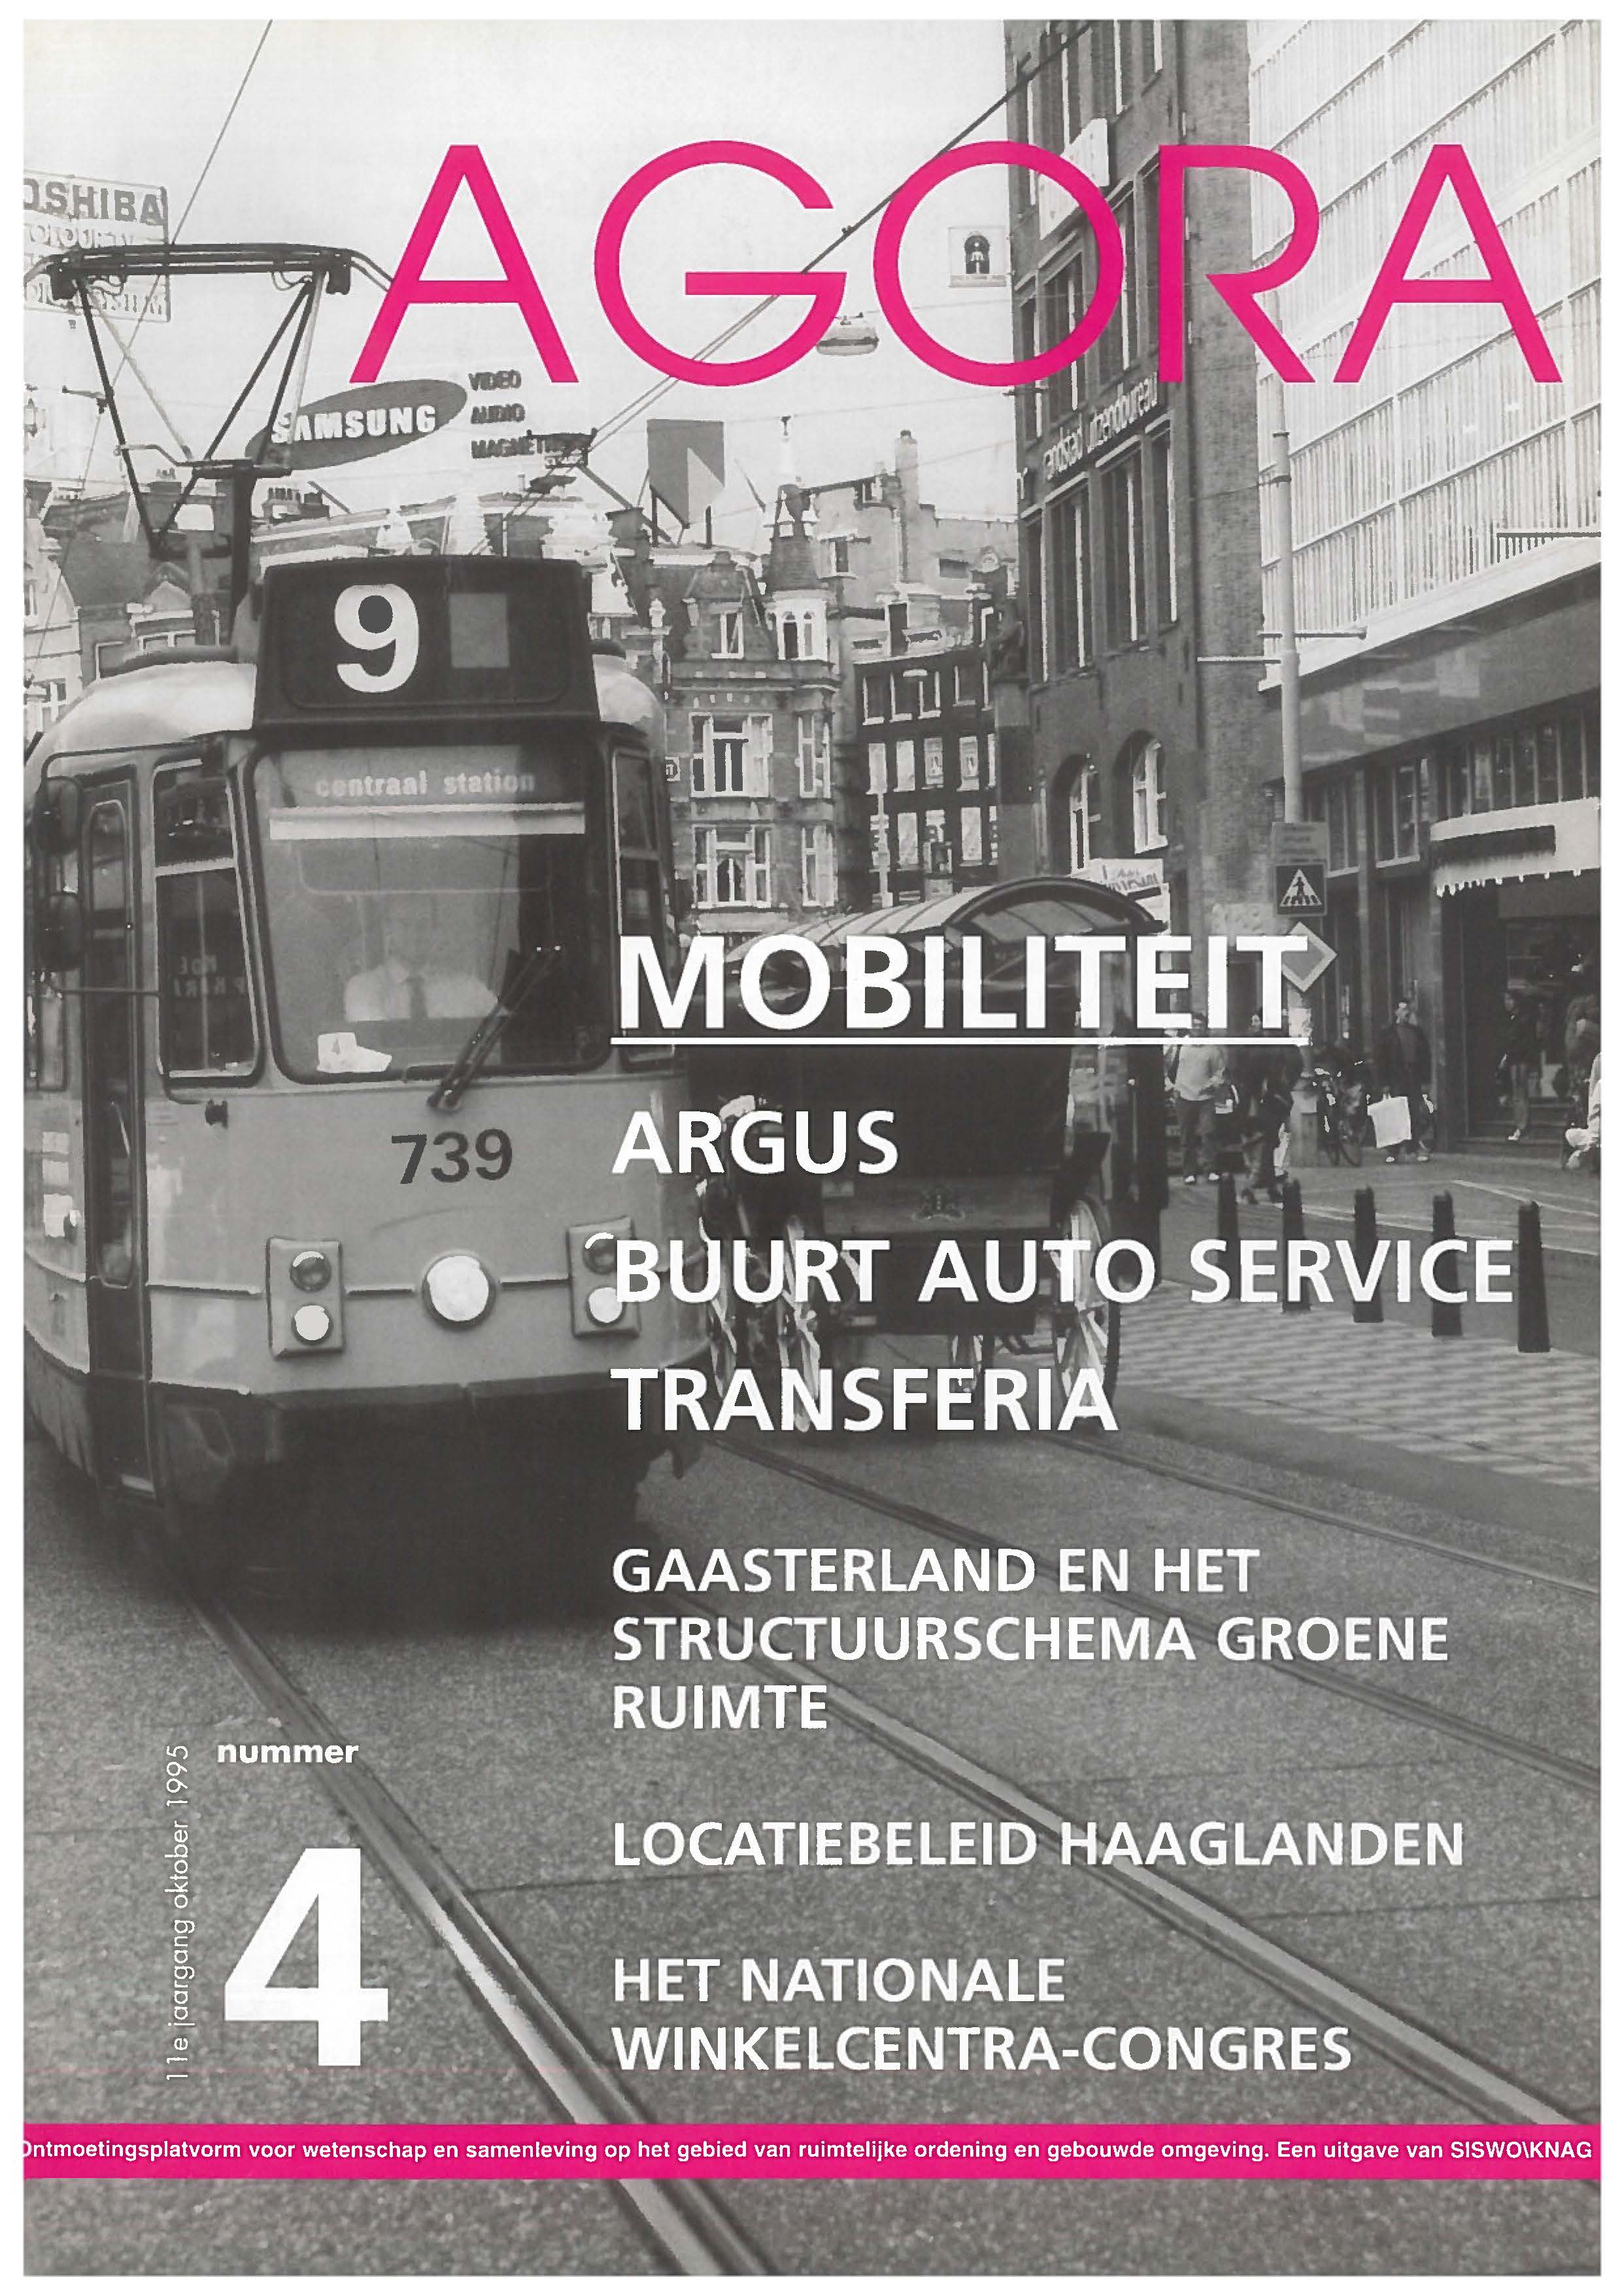 Transferia, een case in Groningen